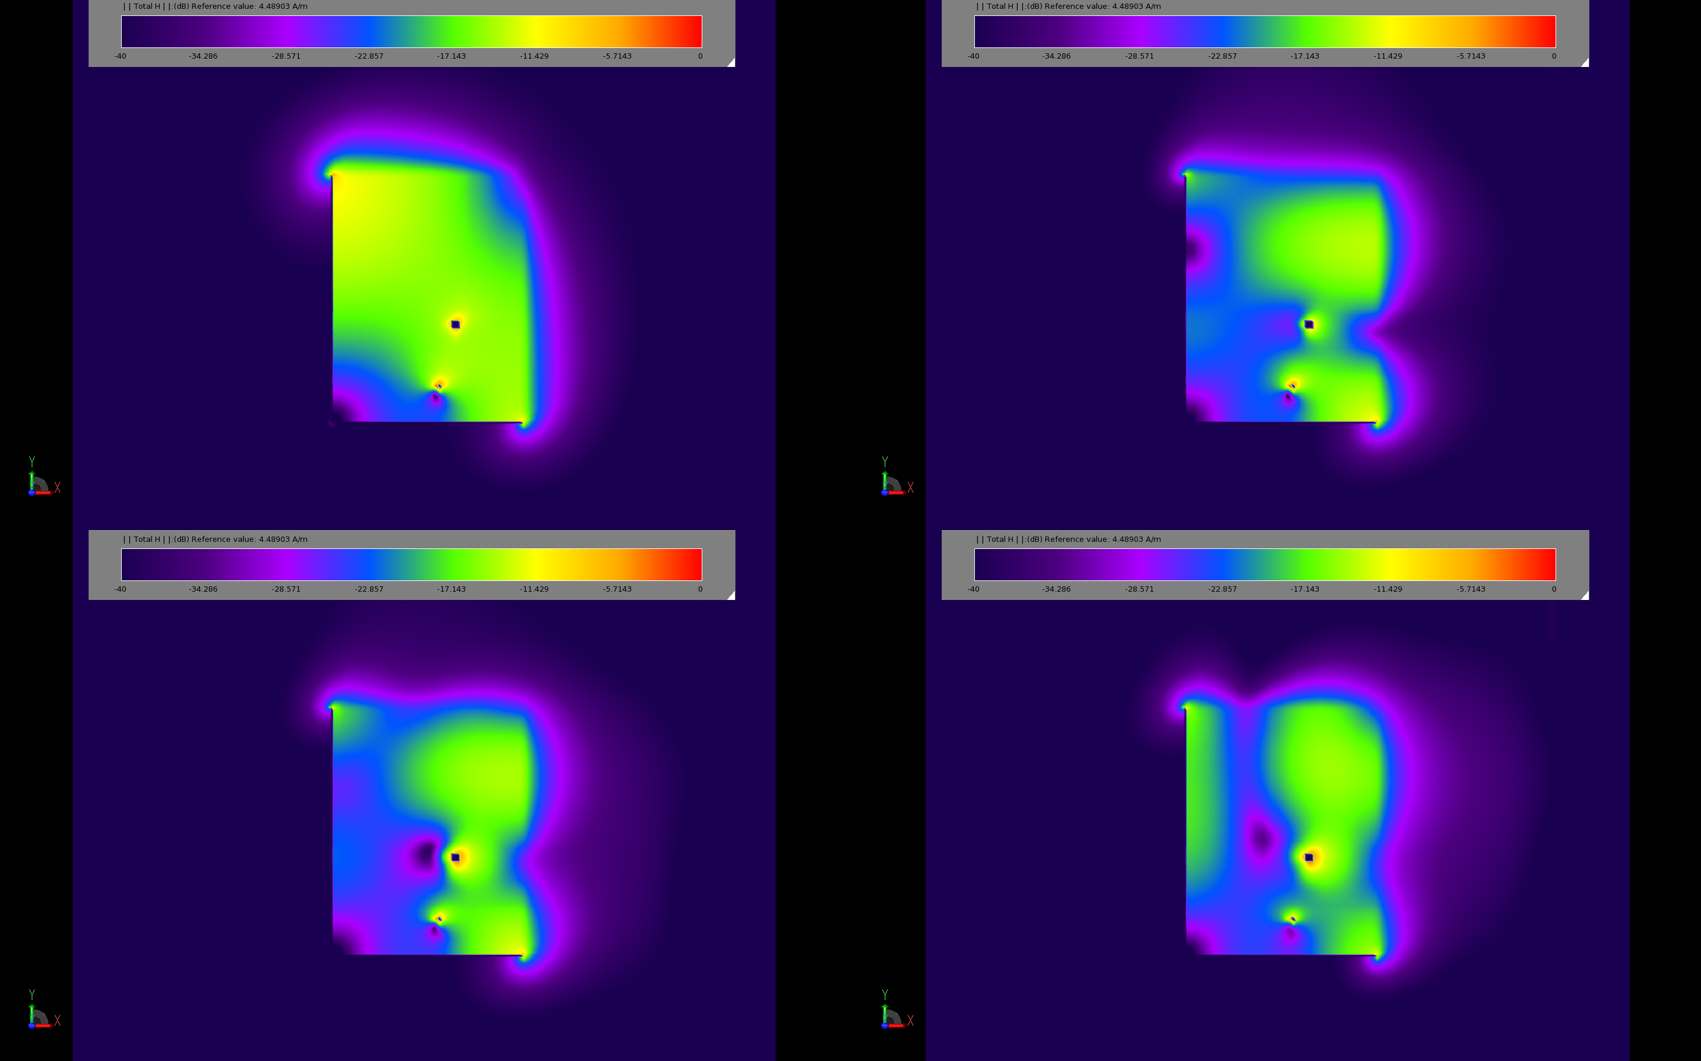 Abbildung 3: Diagramme der stationären Magnetfeldverteilung zeigen die verschiedenen Betriebsarten des Pflasters. Das obere linke Bild (3a) ist bei 2,45 GHz, das obere rechte (3b) bei 5,2 GHz. Die beiden unteren Bilder (3c und 3d) zeigen die Reaktion bei 5....